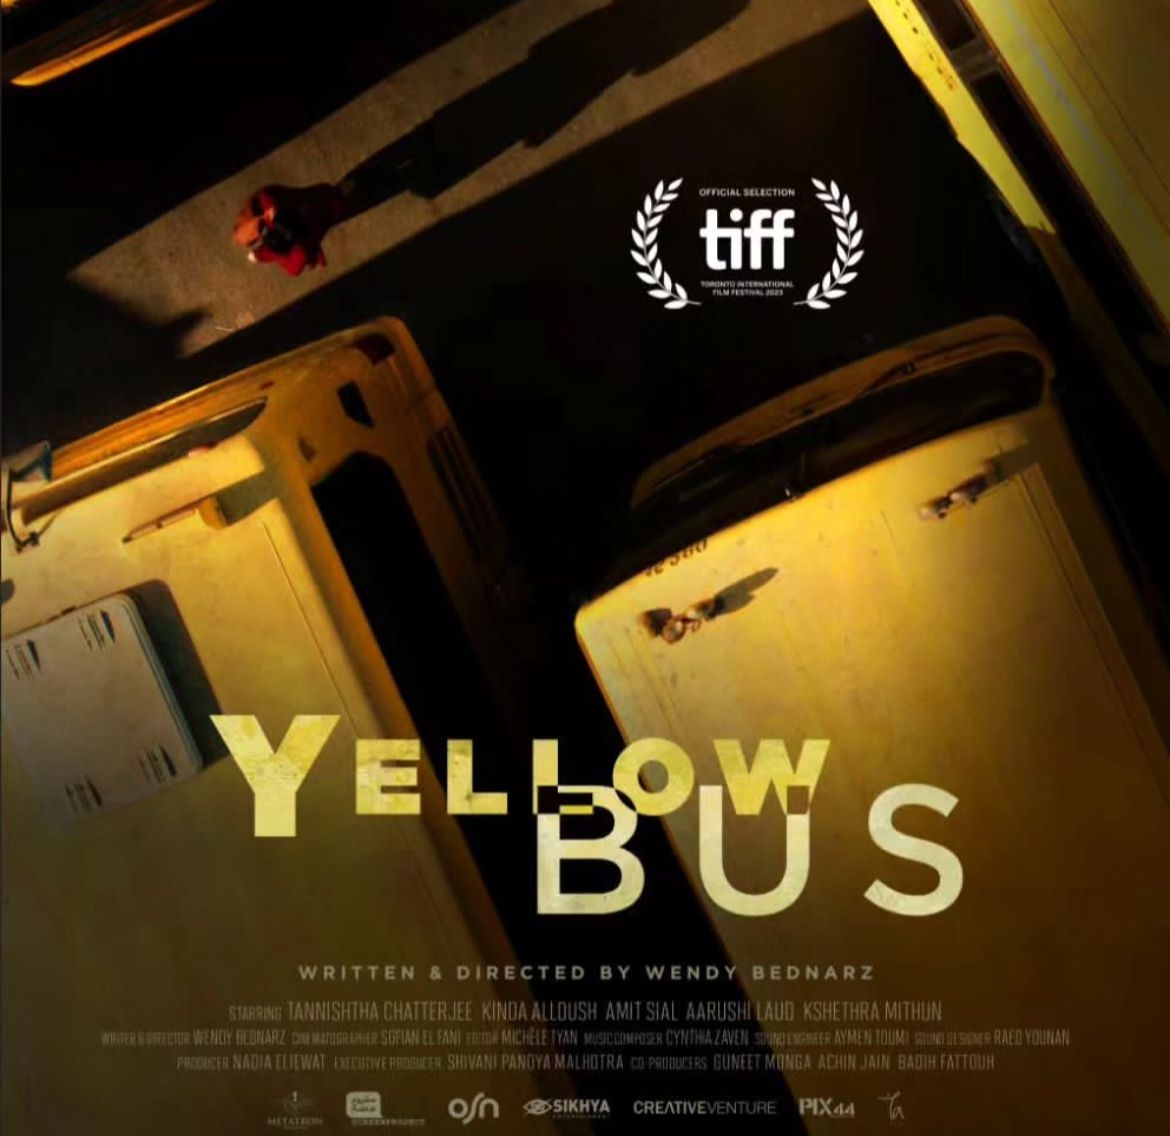 كندة علوش تكشف عن برومو فيلمها العالمي الأول “الحافلة الصفراء”